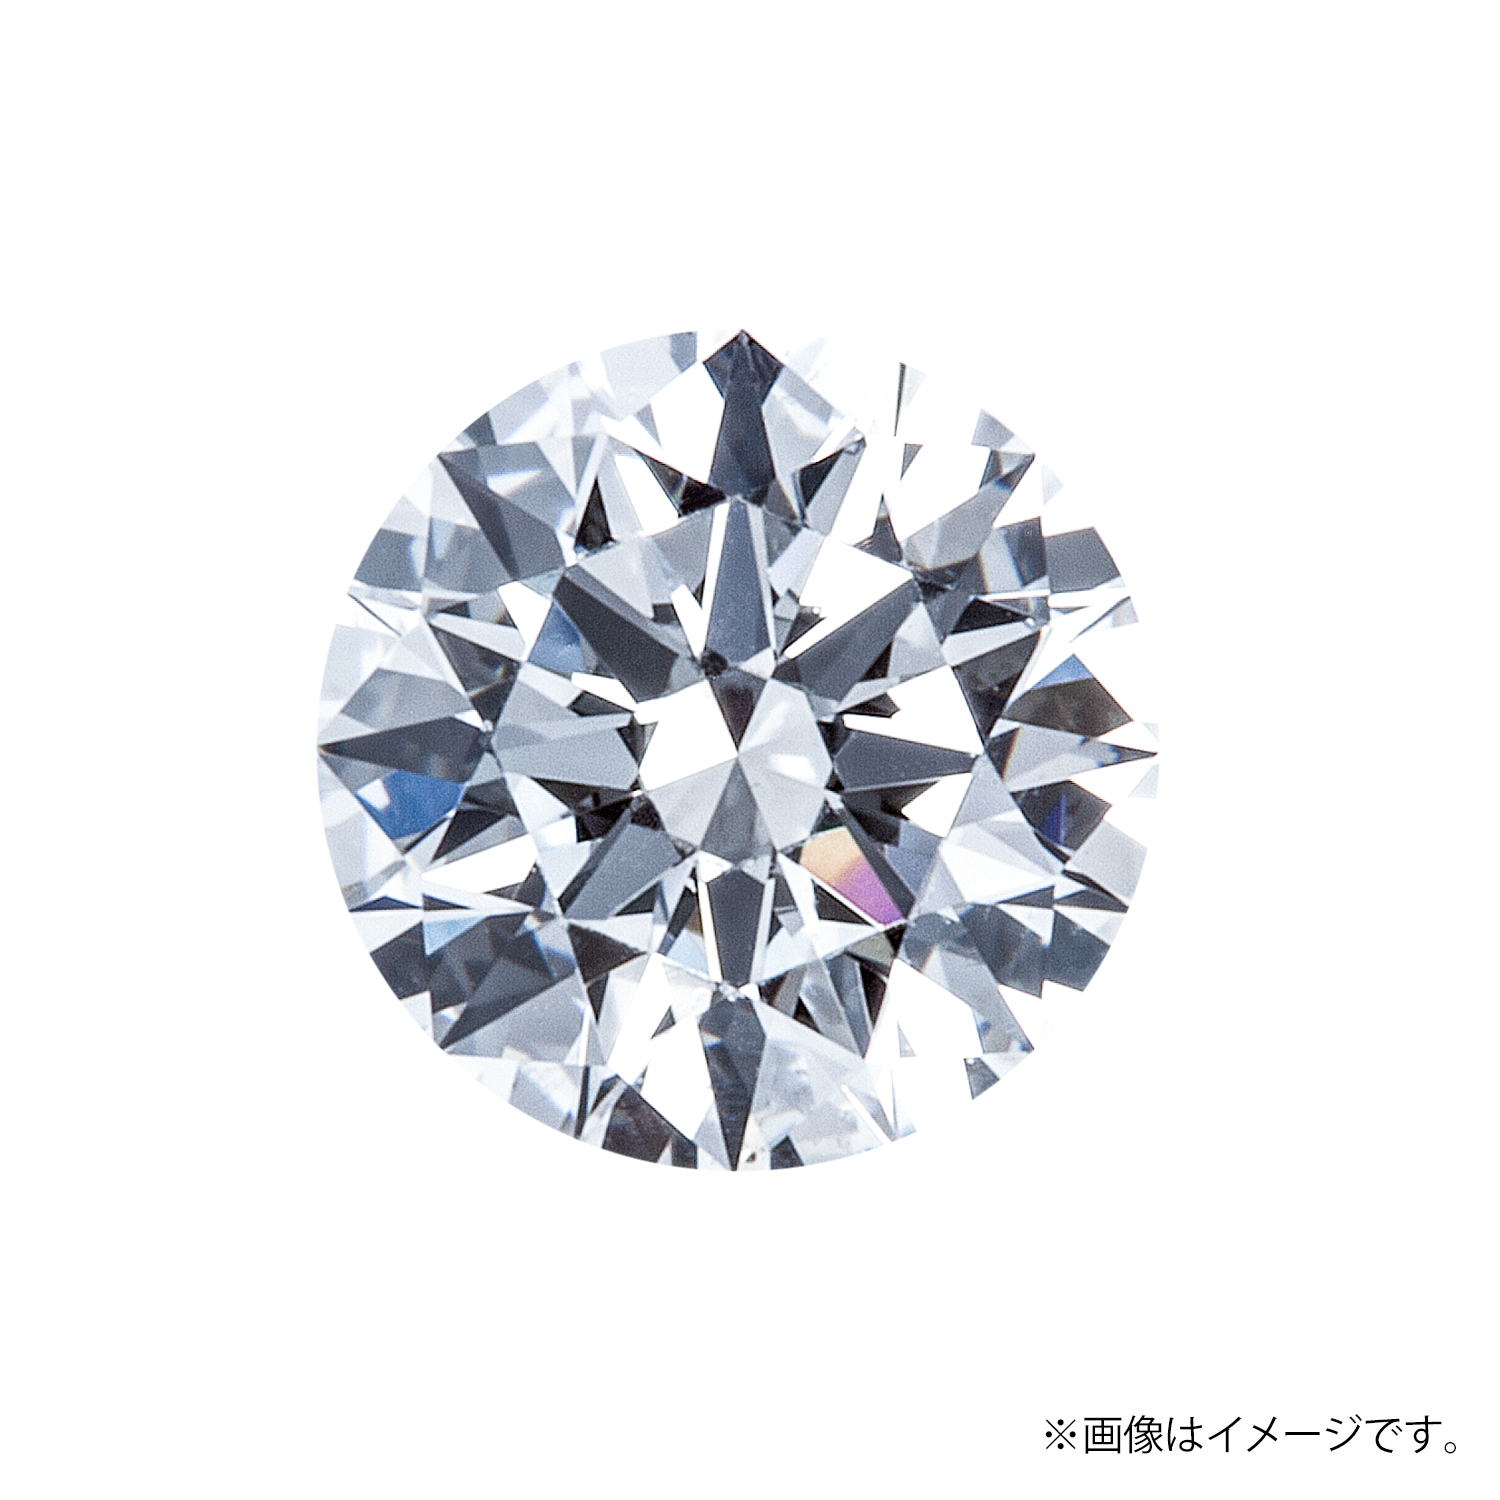 0.252ct Round ダイヤモンド / D / IF / 3EX H&C